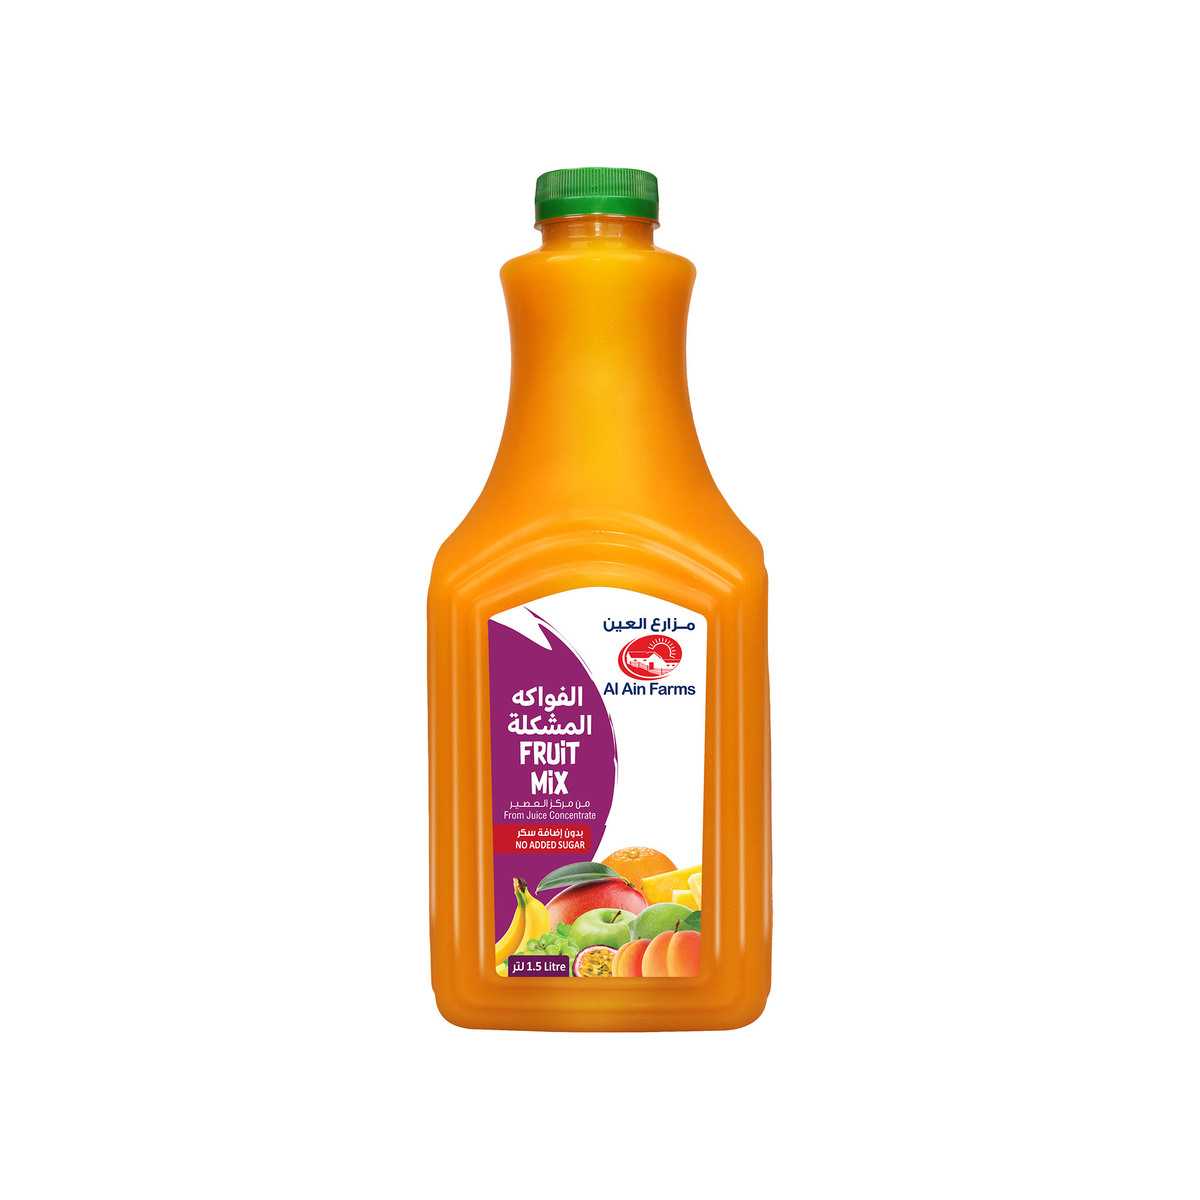 اشتري قم بشراء العين عصير الفواكه المشكلة 1.5 لتر Online at Best Price من الموقع - من لولو هايبر ماركت Fresh Juice Assorted في الامارات